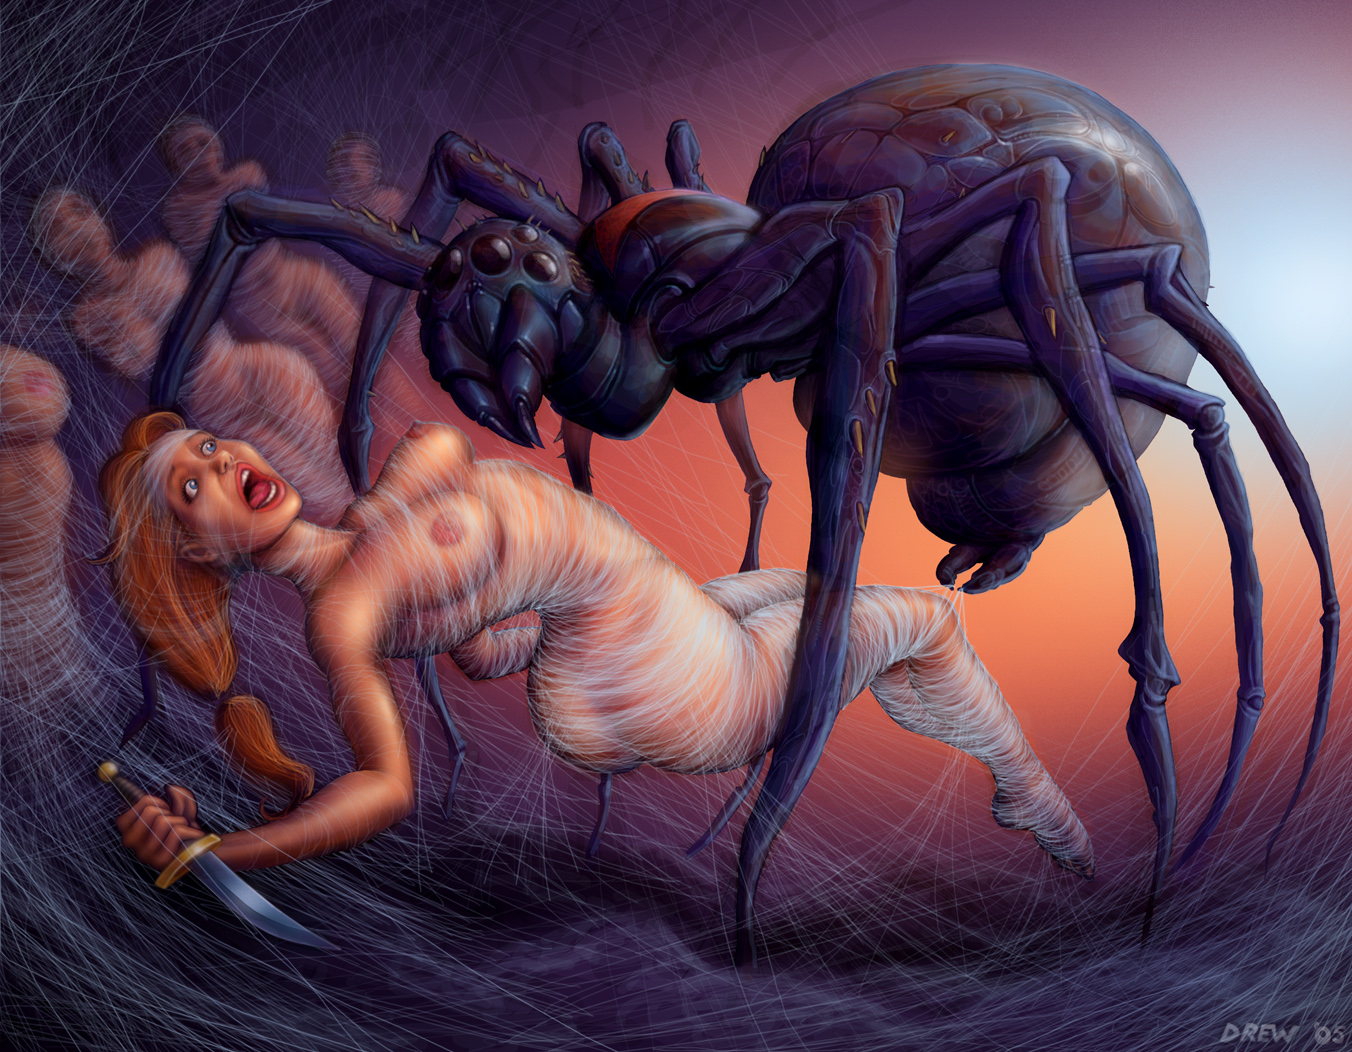 жестокий секс, огромный паук поймал рыжую девушку в свою паутину и готовится впрыснуть свое семя в ее вагину, рисунок бдсм, эрогуро